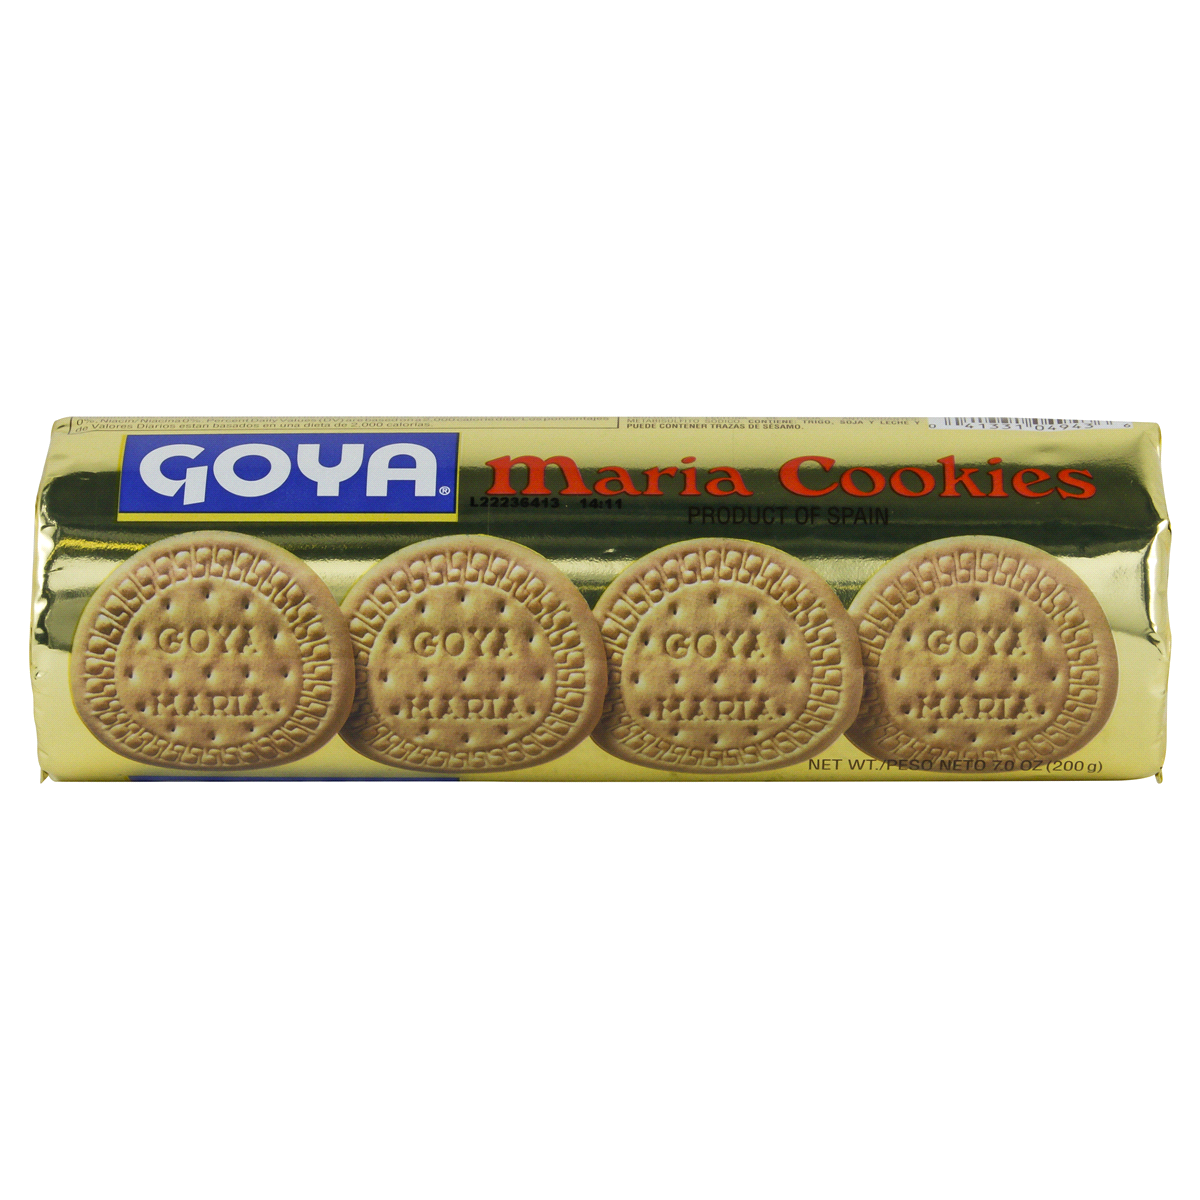 slide 19 of 22, Goya Maria Cookies 7 oz, 7 oz